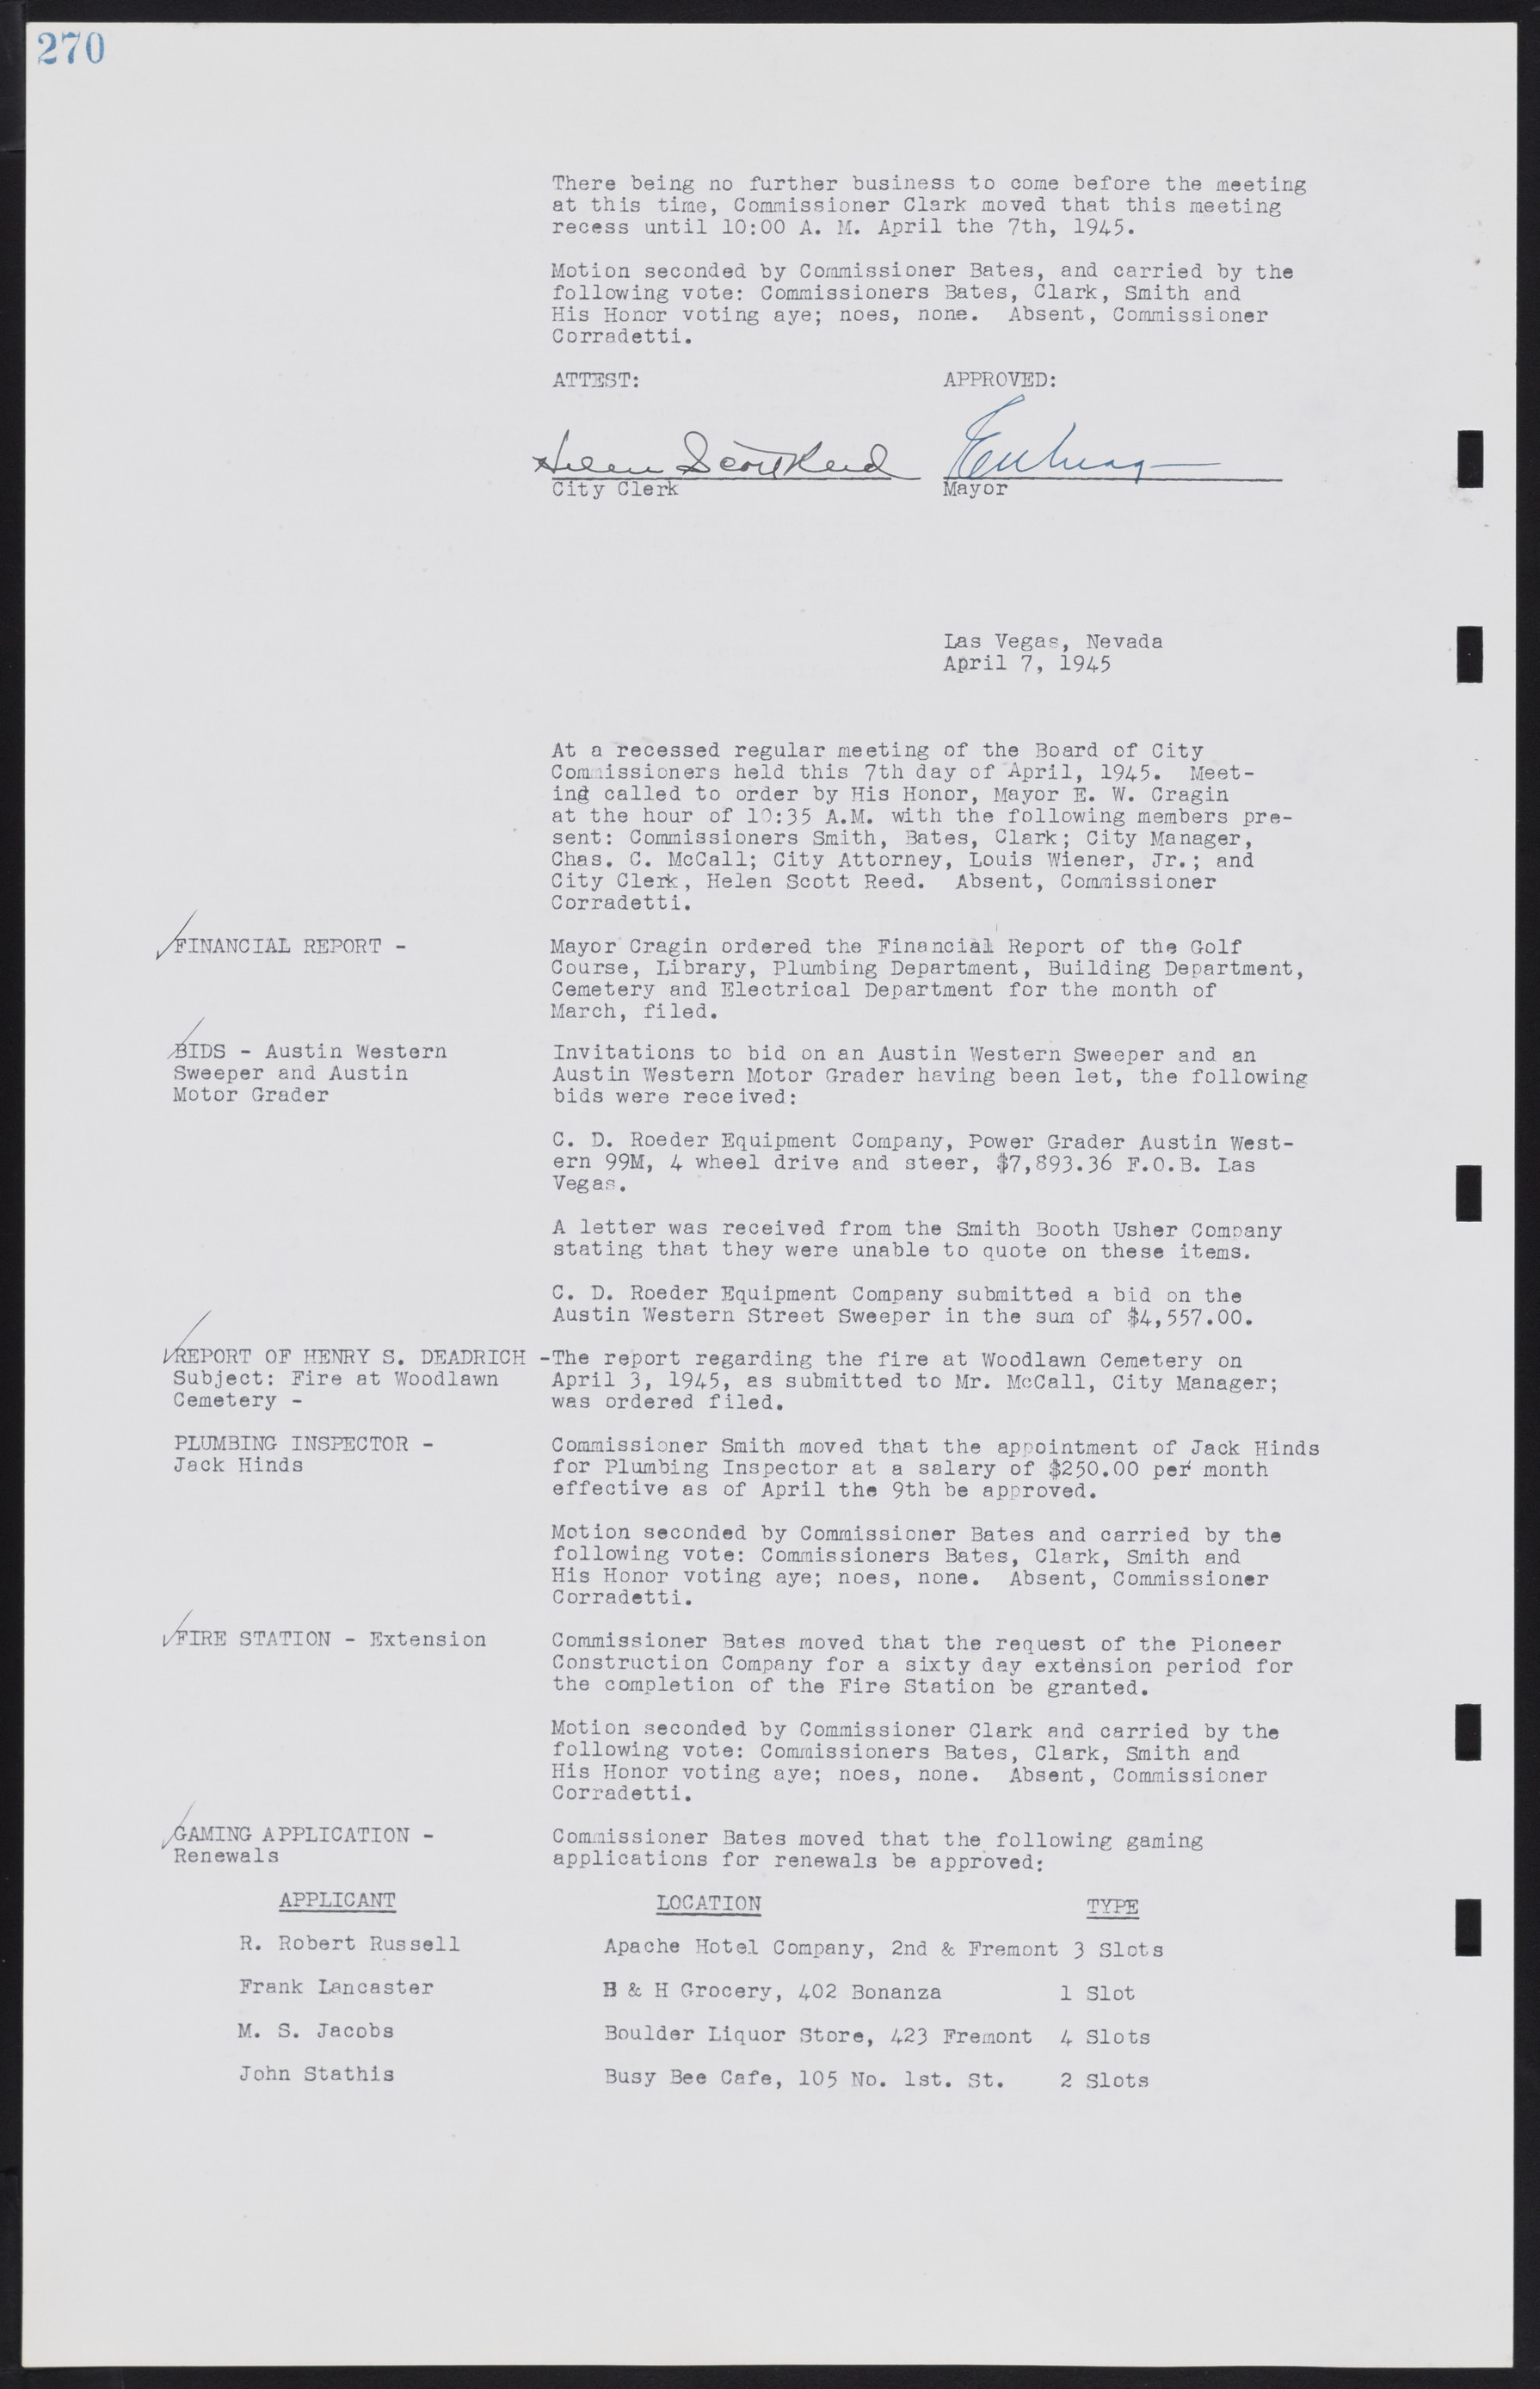 Las Vegas City Commission Minutes, August 11, 1942 to December 30, 1946, lvc000005-292